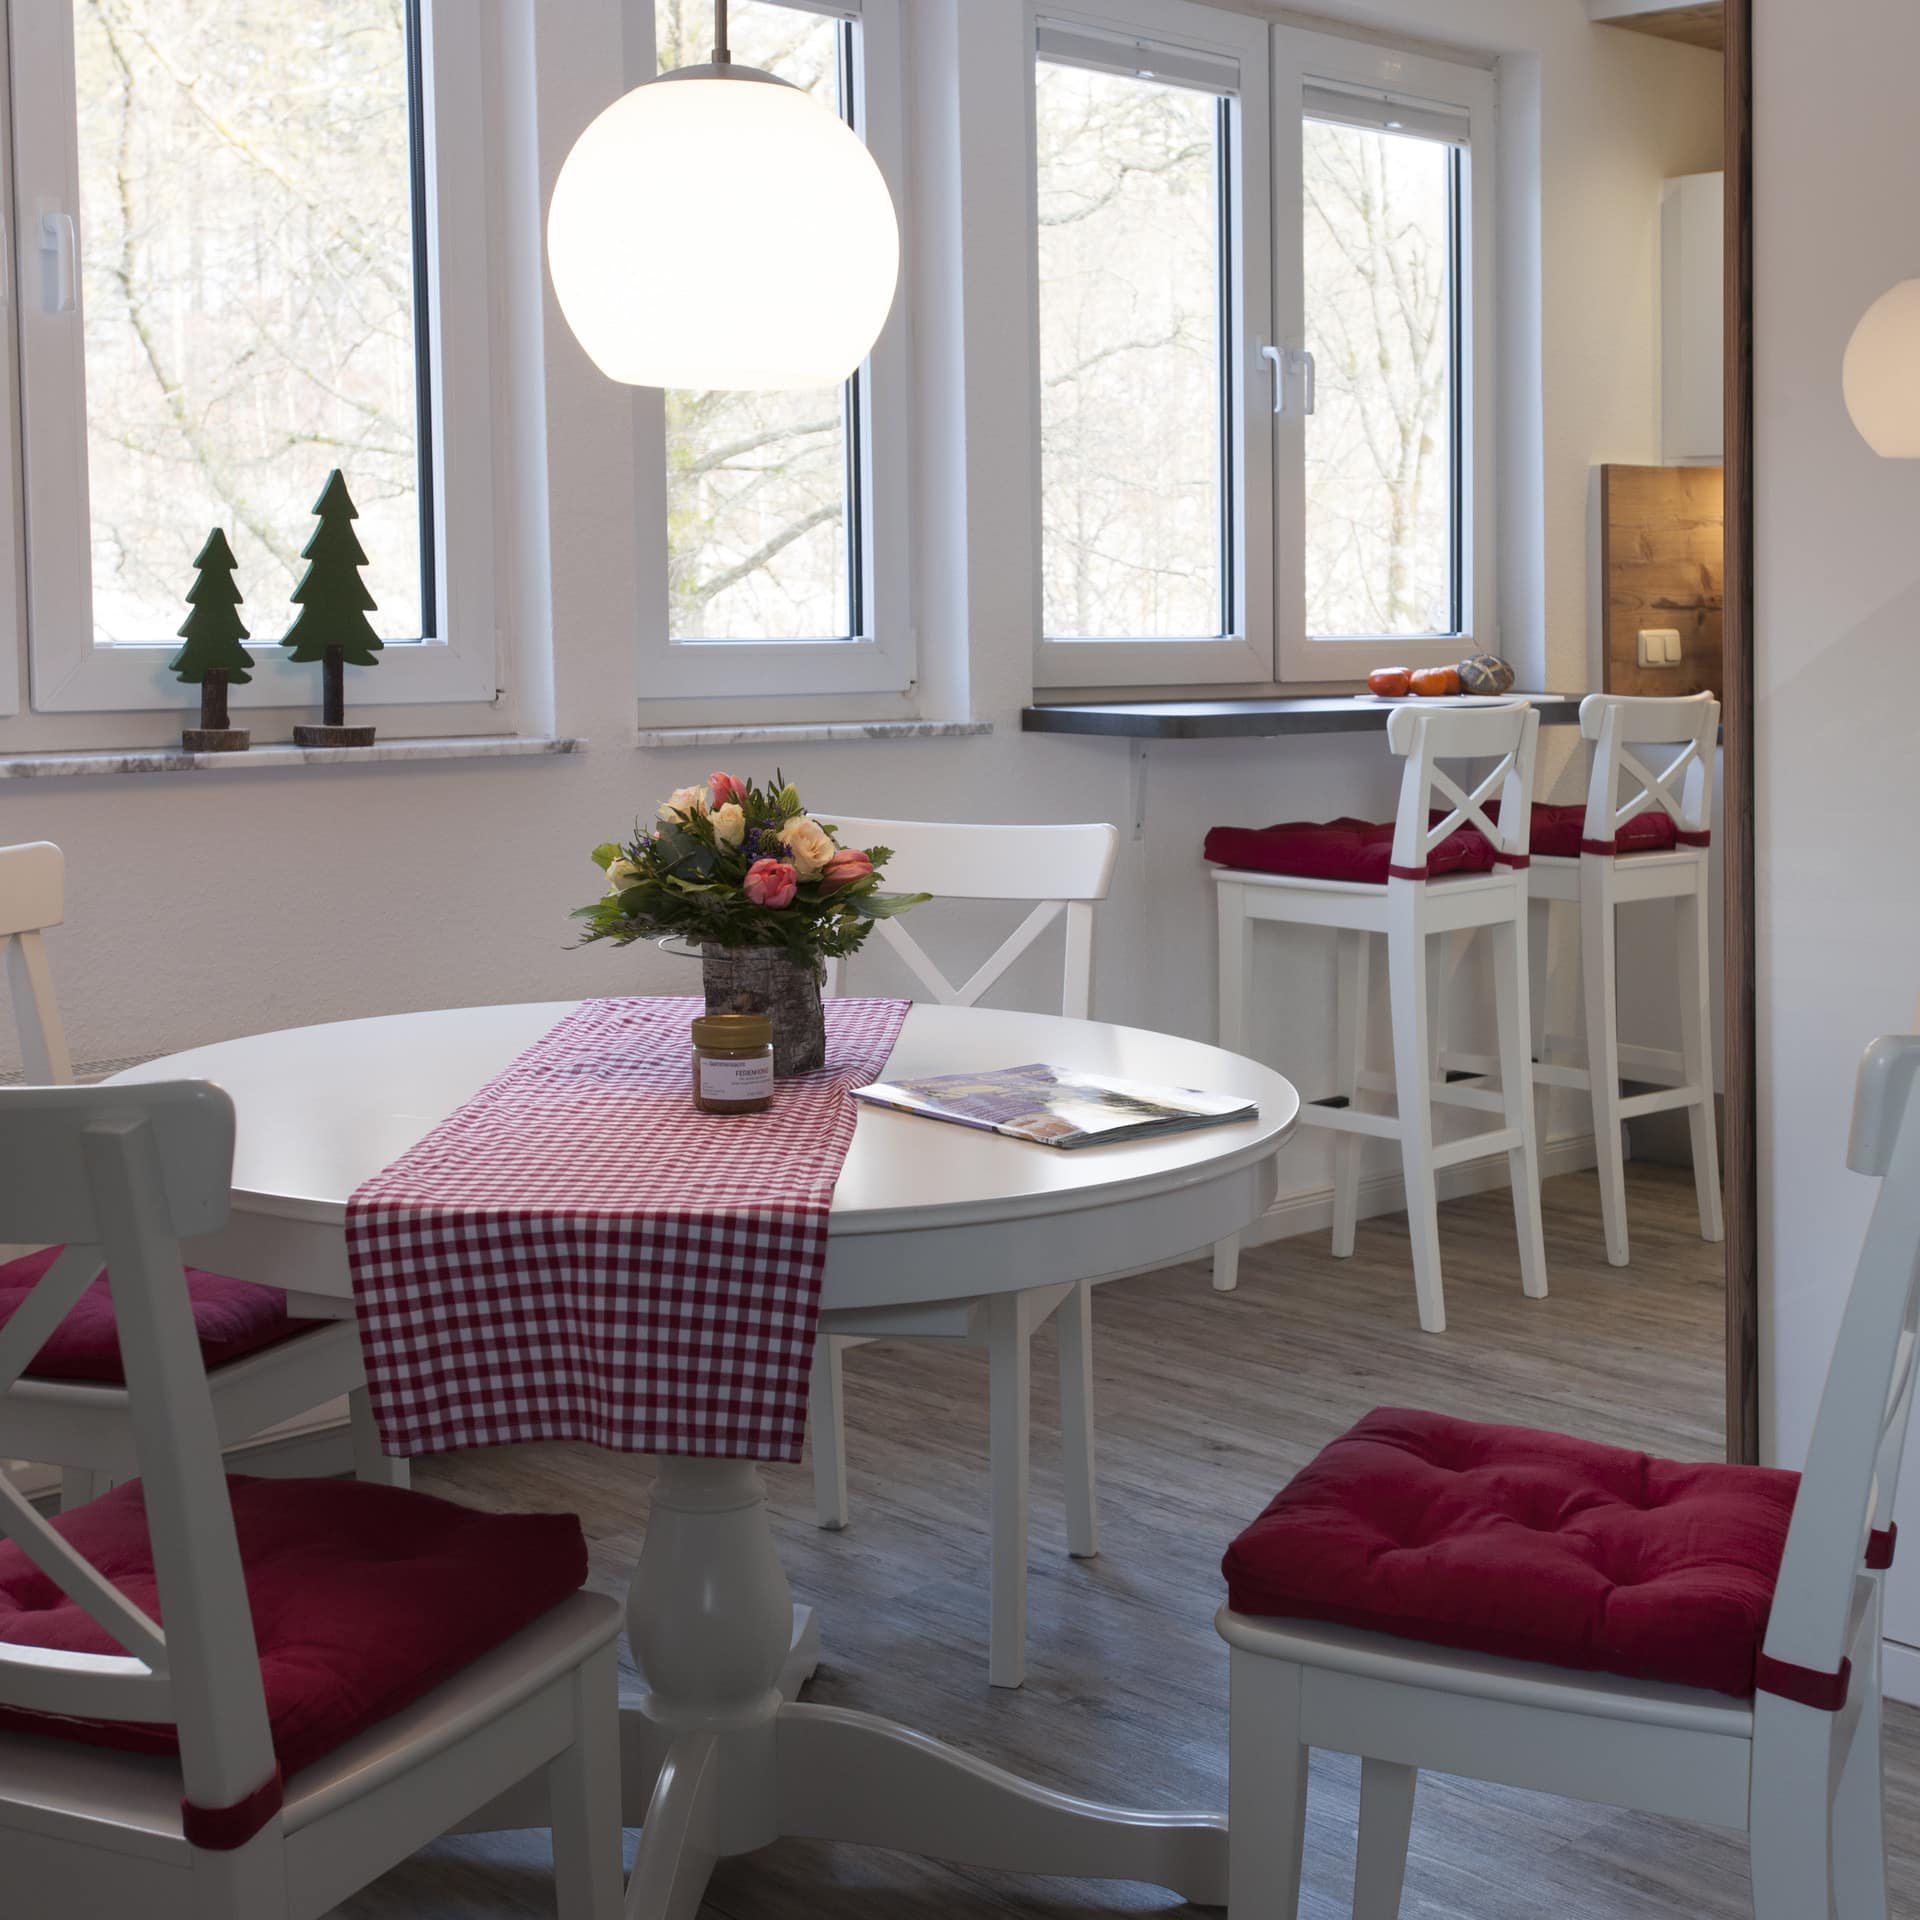 Ferienwohnung in Braunlage mit gemütlicher Wohnküche mit hellen Möbeln und roten Sitzpolstern